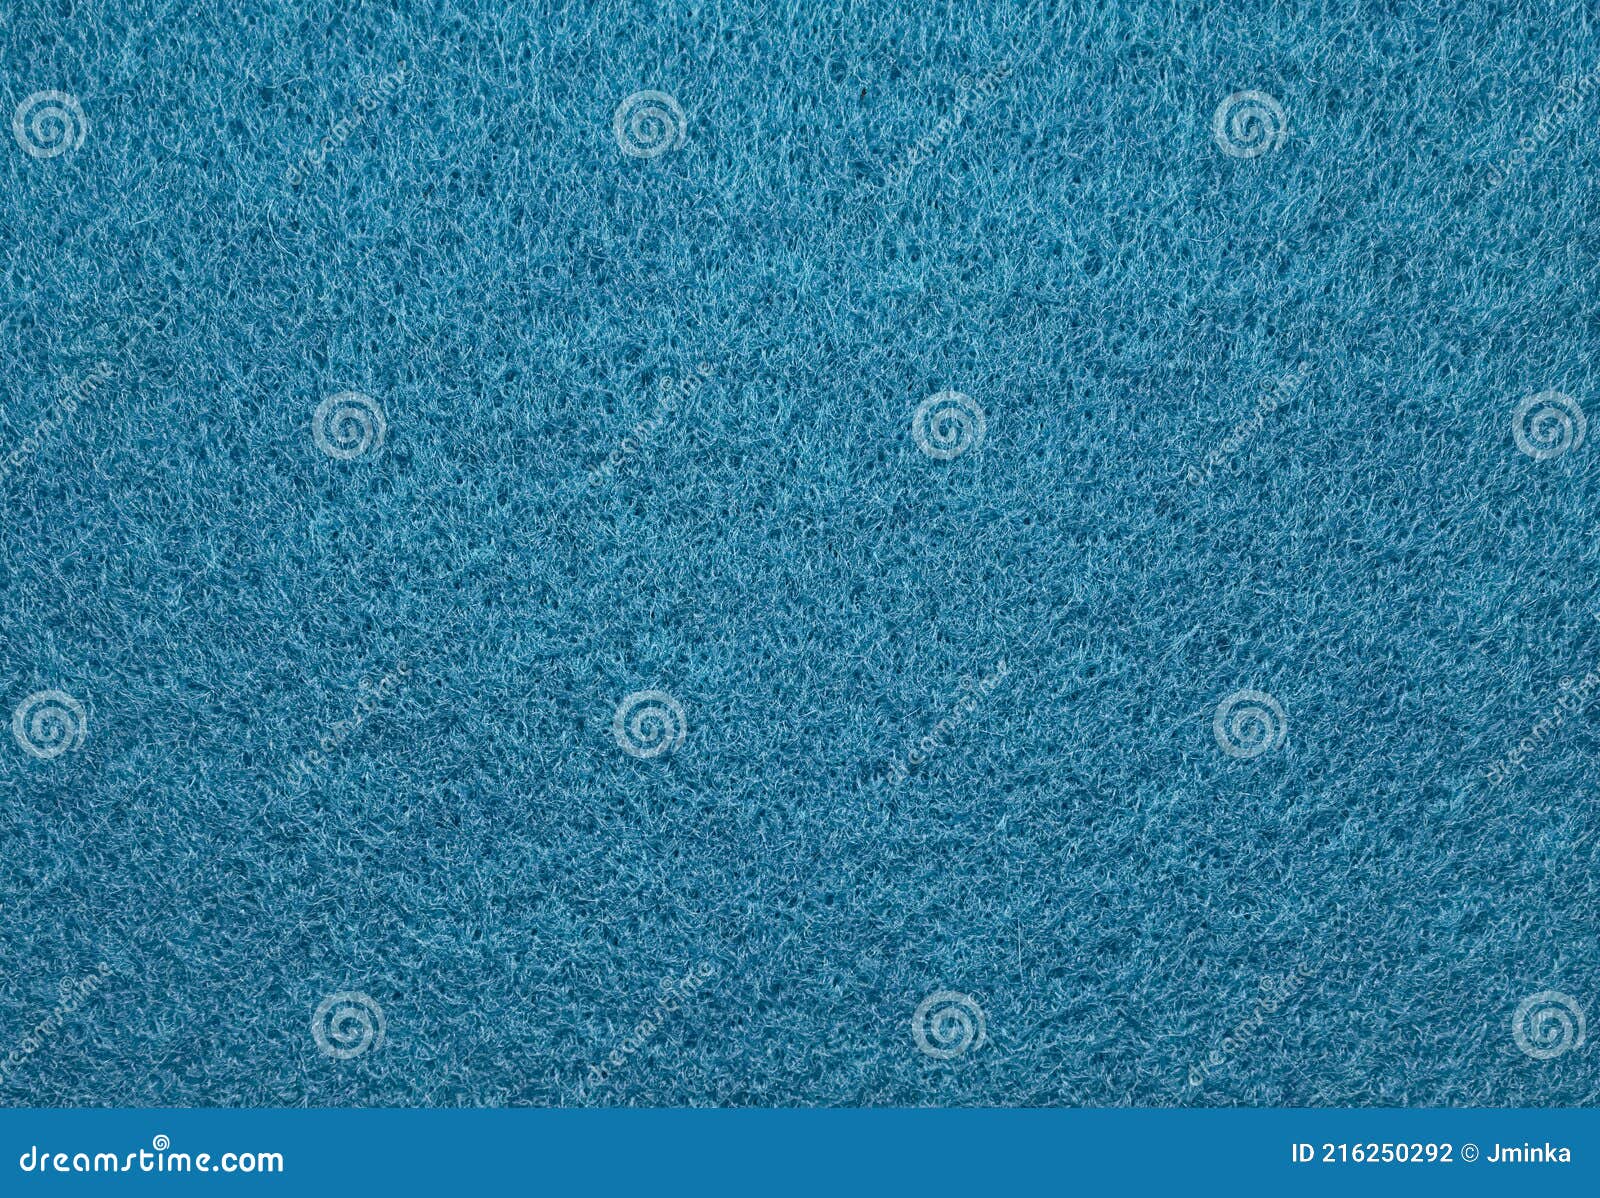 Blue Felt Texture Background Stock Photo - Image of blue, organic ...